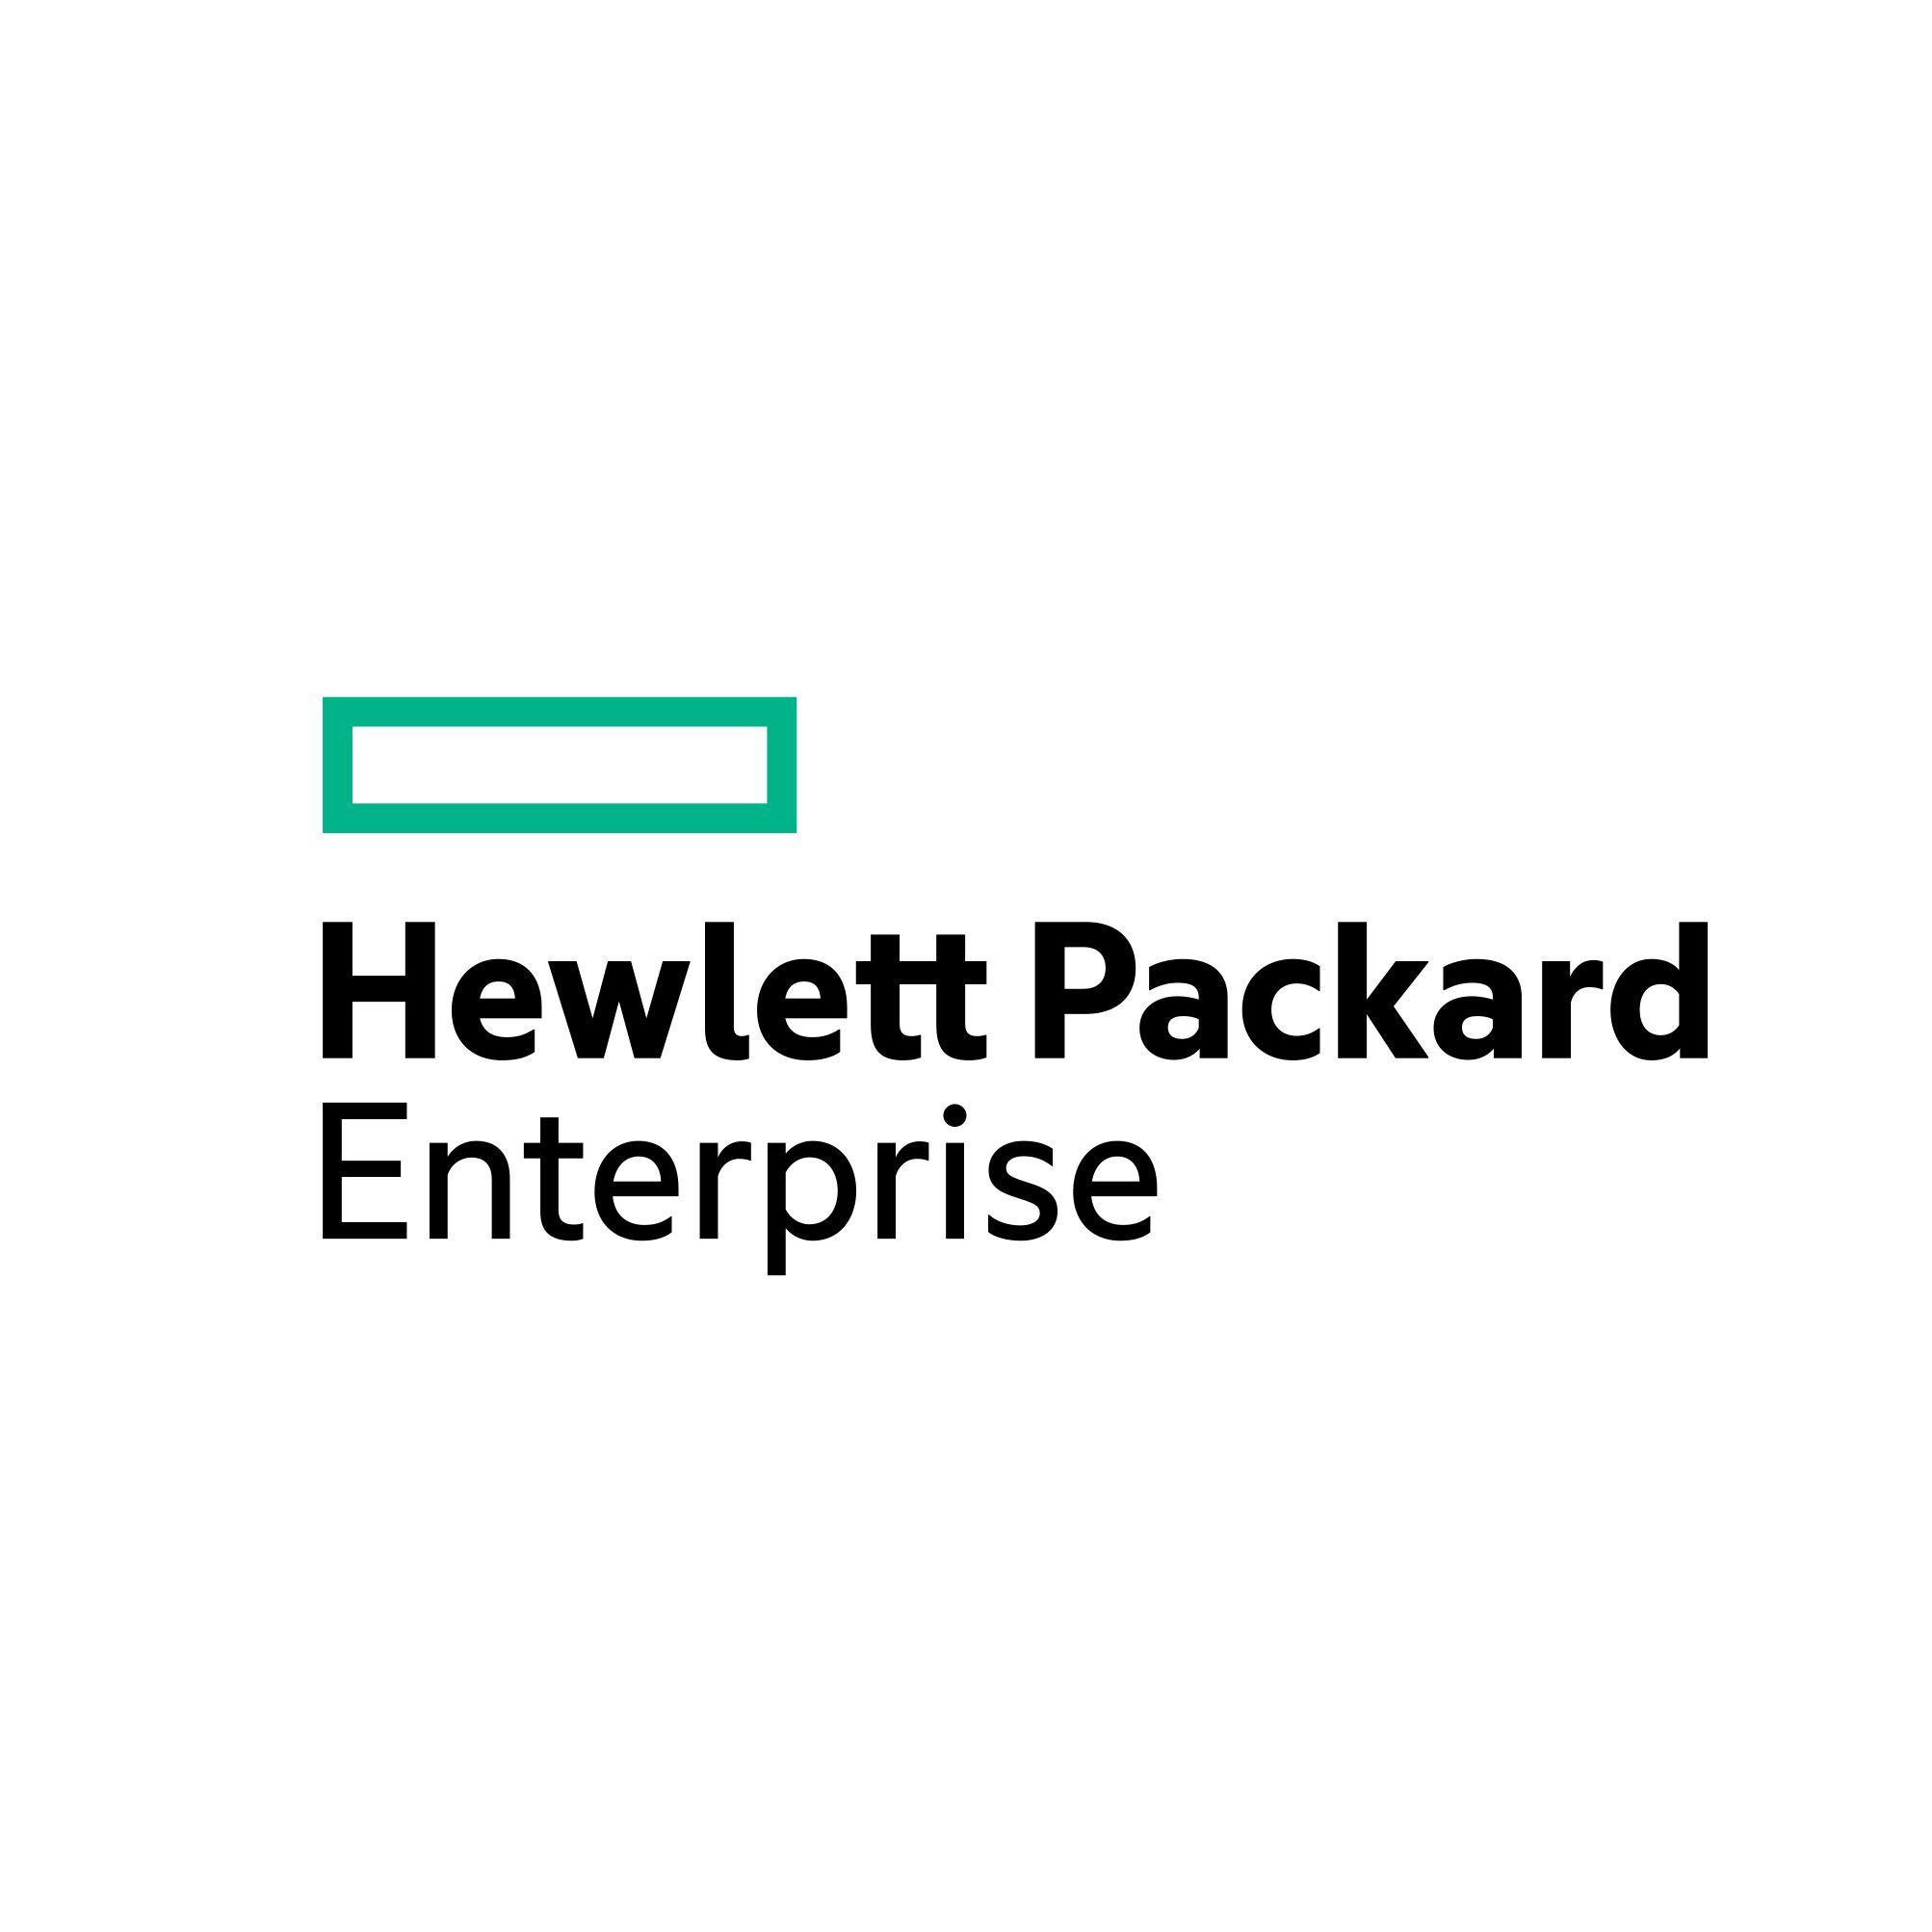 Hp Usa Logo - Hewlett Packard Enterprise (HPE)